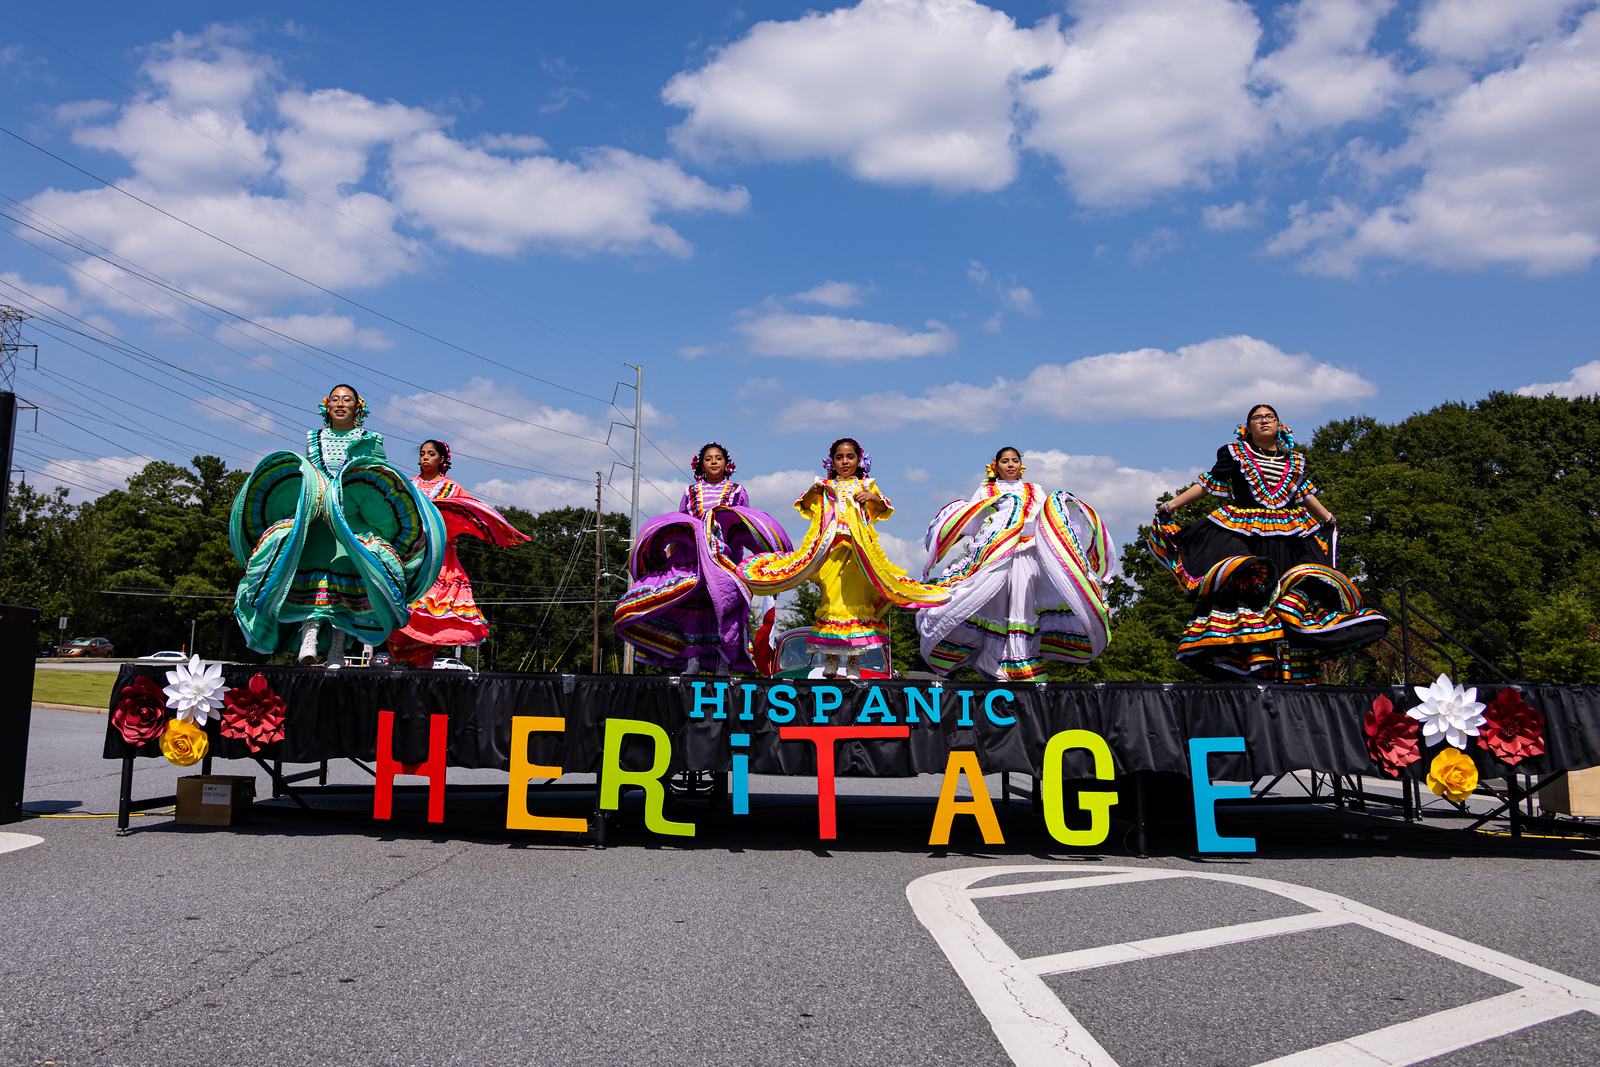 Hispanic Heritage Celebration cover image